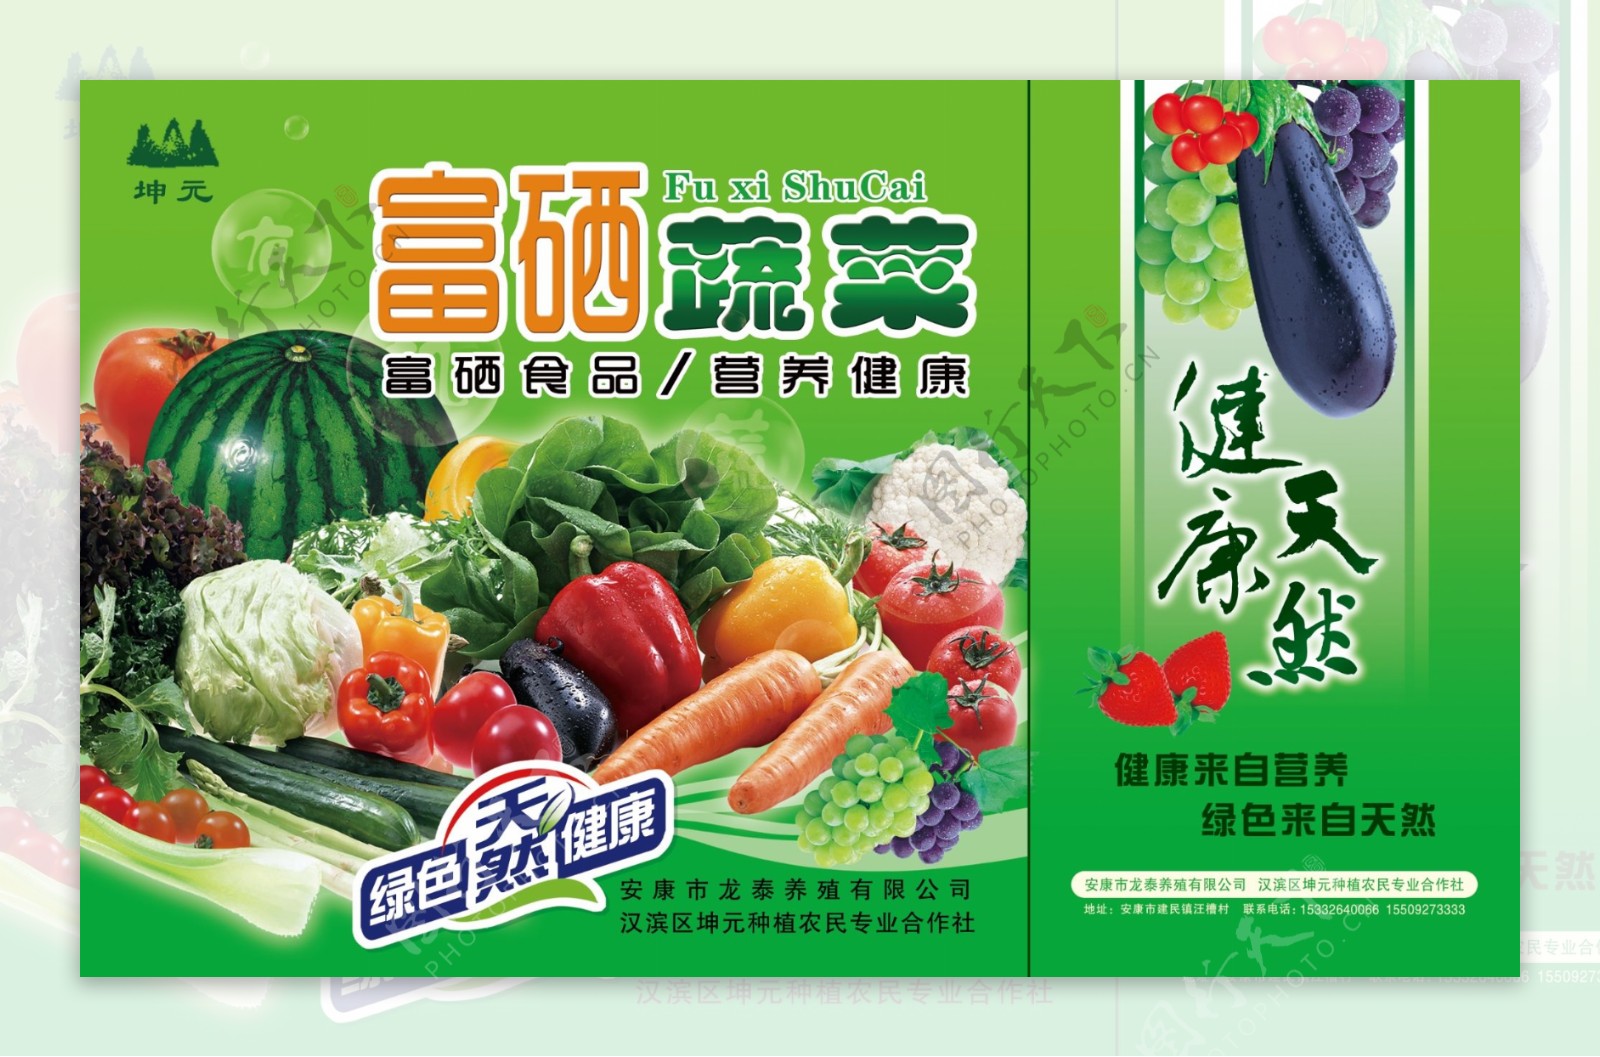 有机蔬菜包装图片